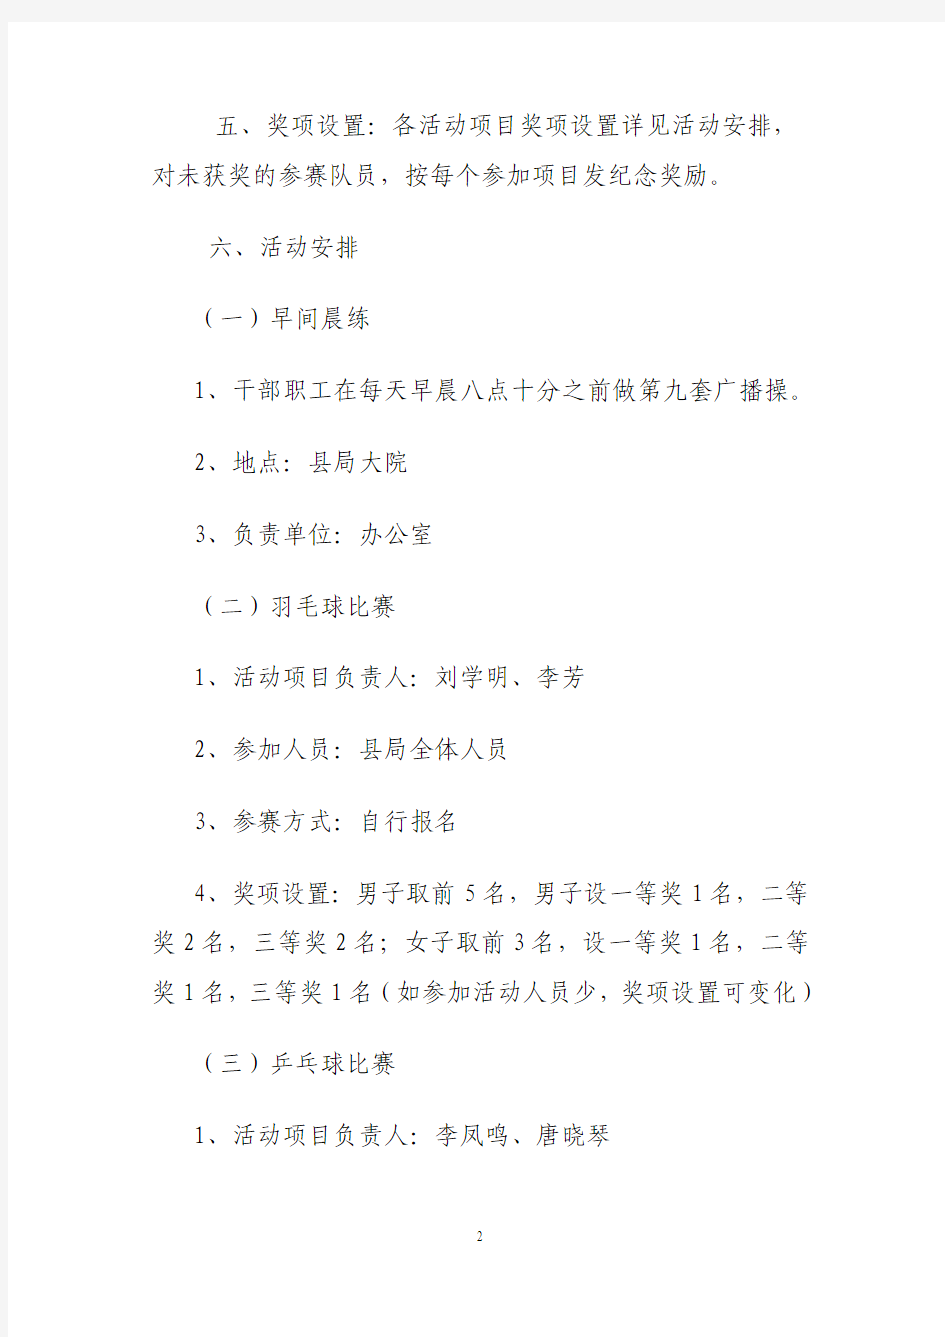 山丹县国家税务局关于举办“五一”运动会的通知